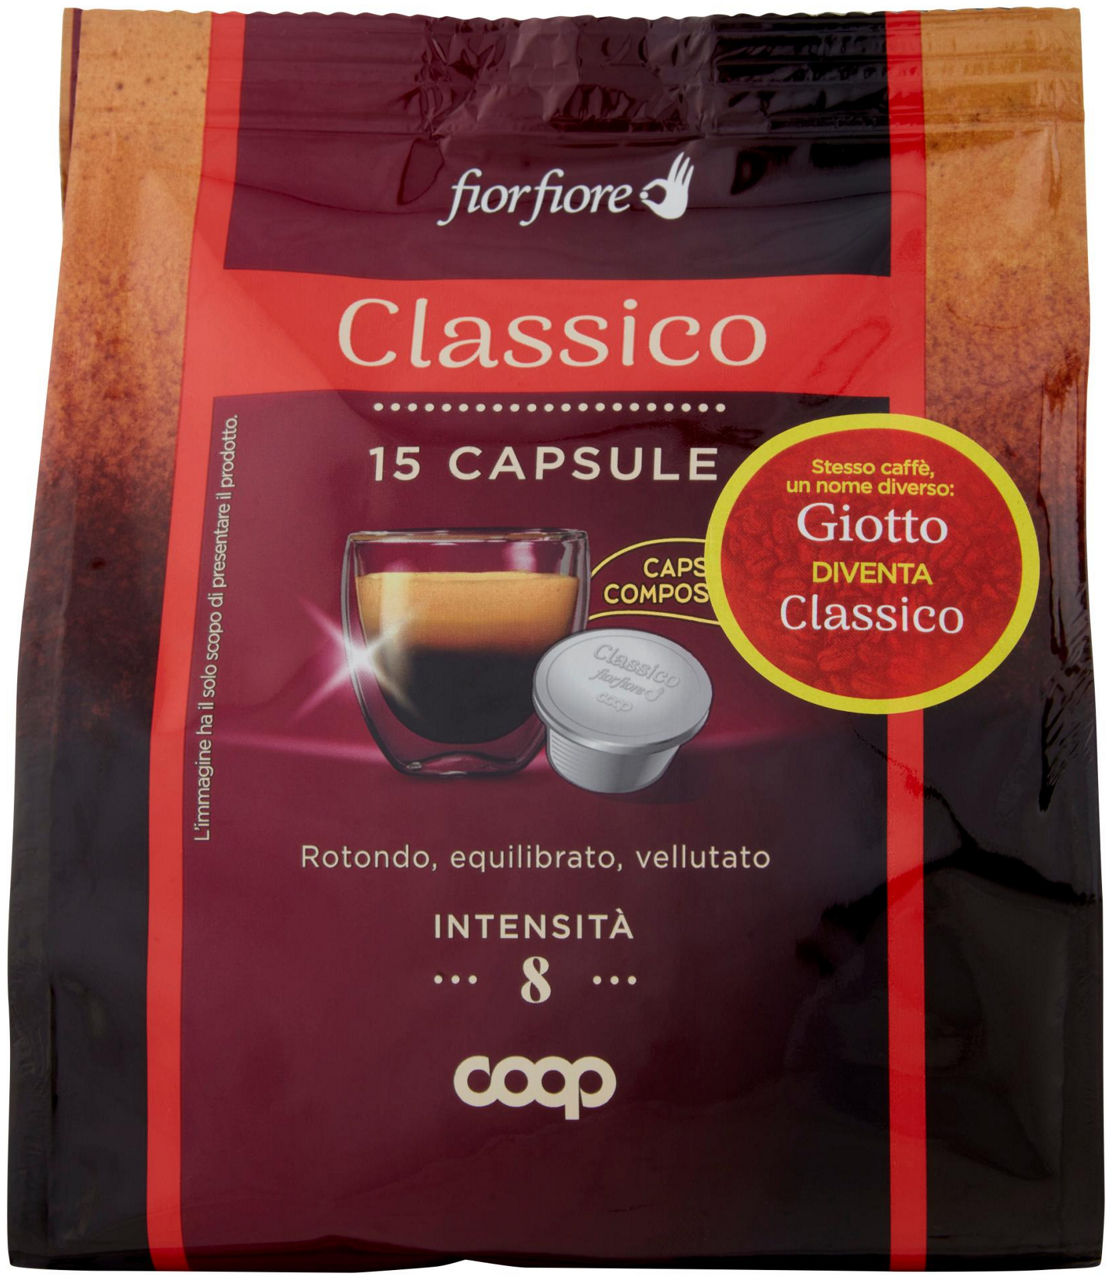 Caffe' classico in capsule compostabili giotto fior fiore coop pz 15 g 100